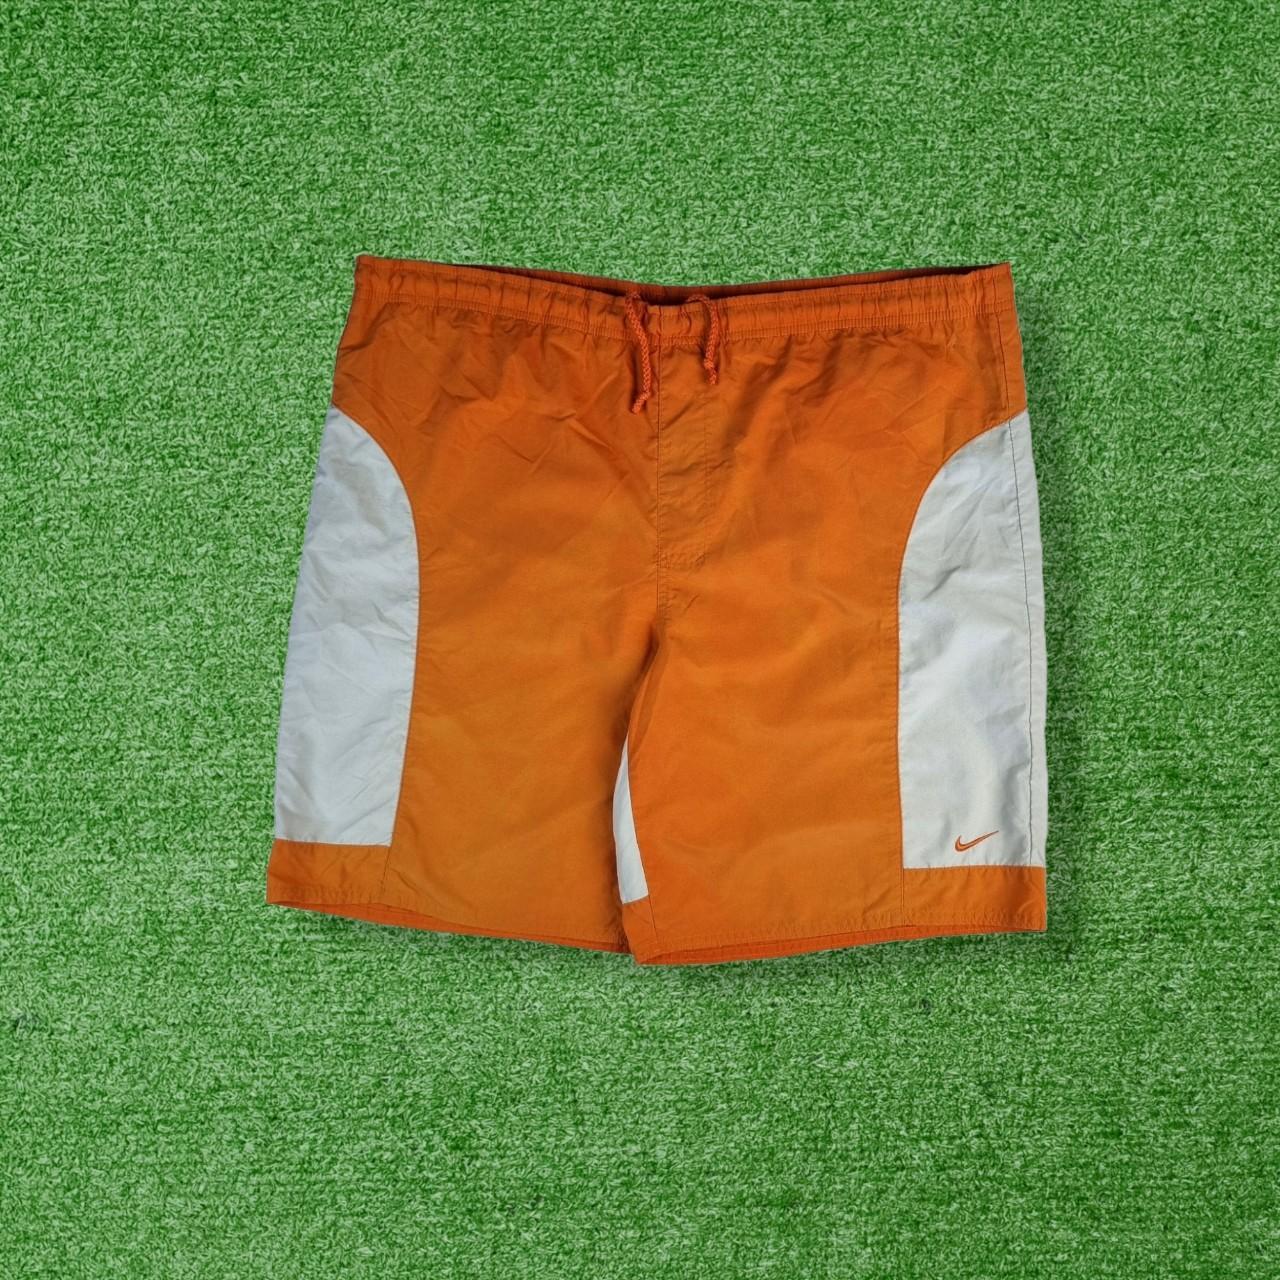 Men's Vintage Nike Shorts Orange and grey... - Depop